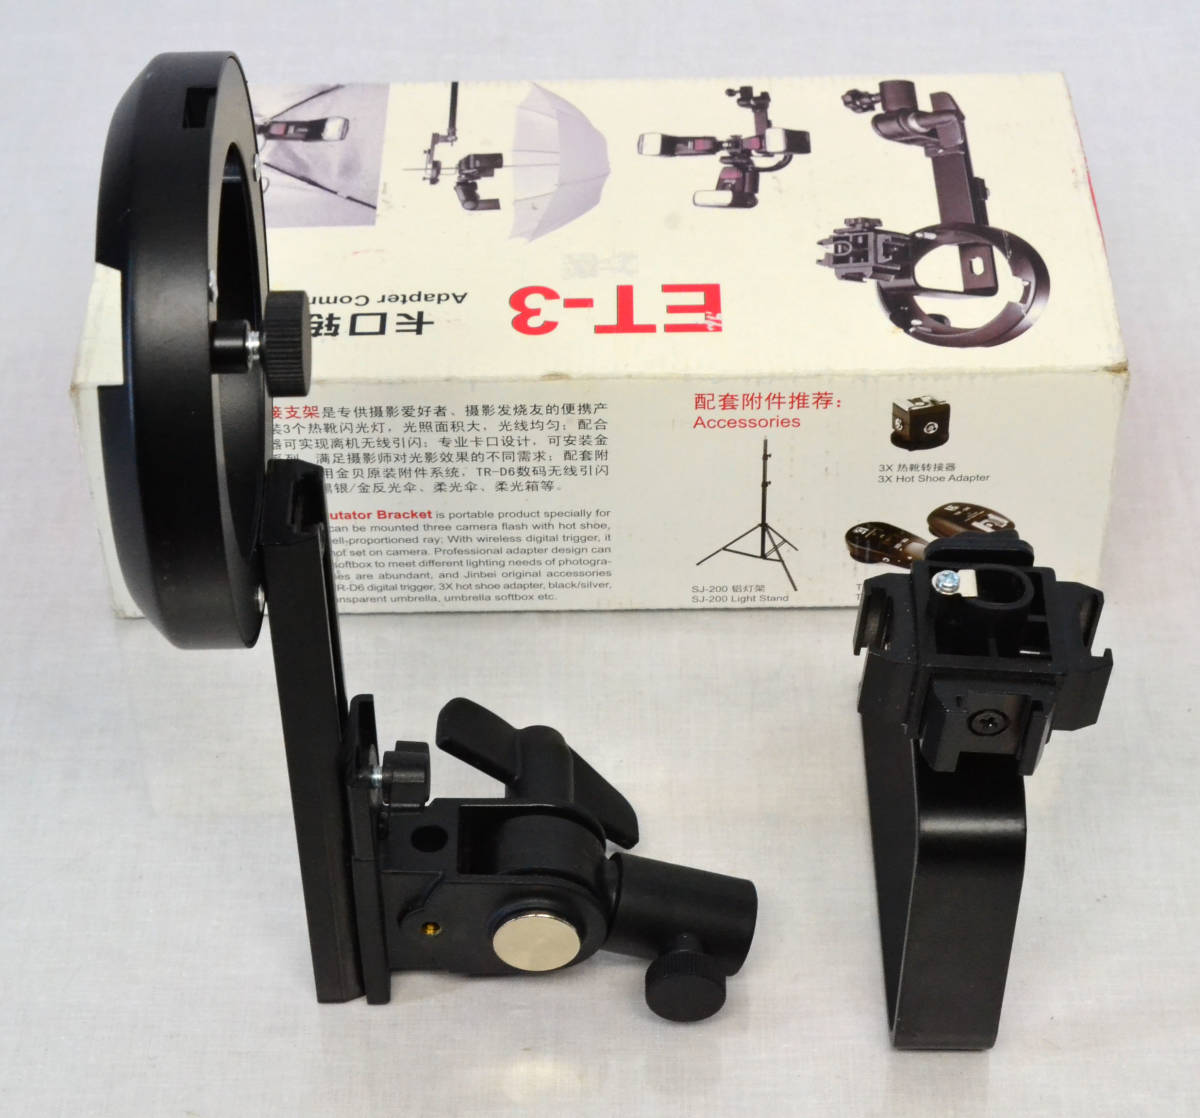 4! flash адаптор держатель стробоскоп освещение ET-3 новый старый товар 